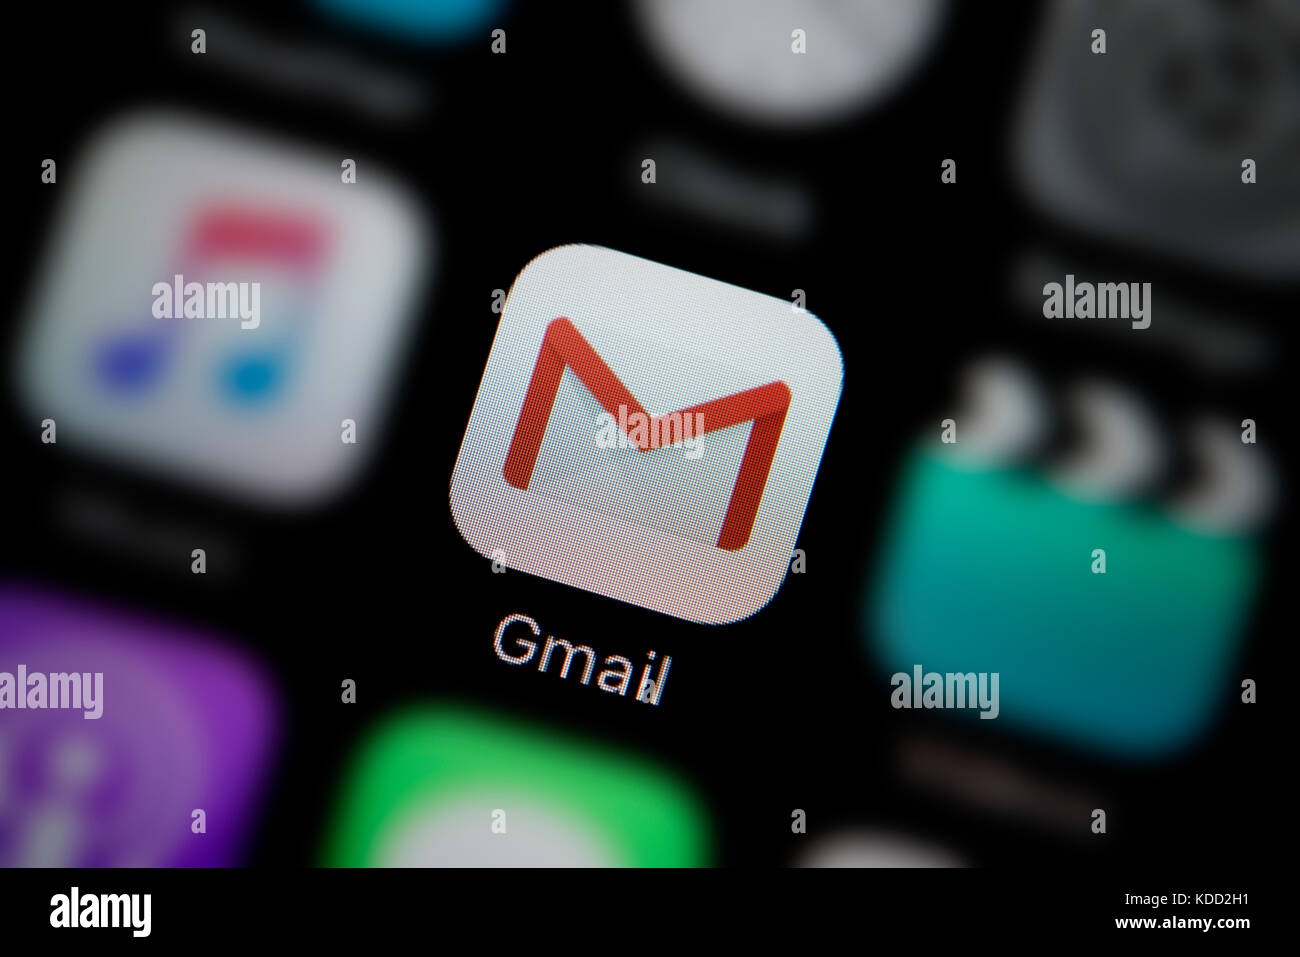 Un gros plan sur le logo représentant l'icône de l'application Gmail, comme on le voit sur l'écran d'un téléphone intelligent (usage éditorial uniquement) Banque D'Images